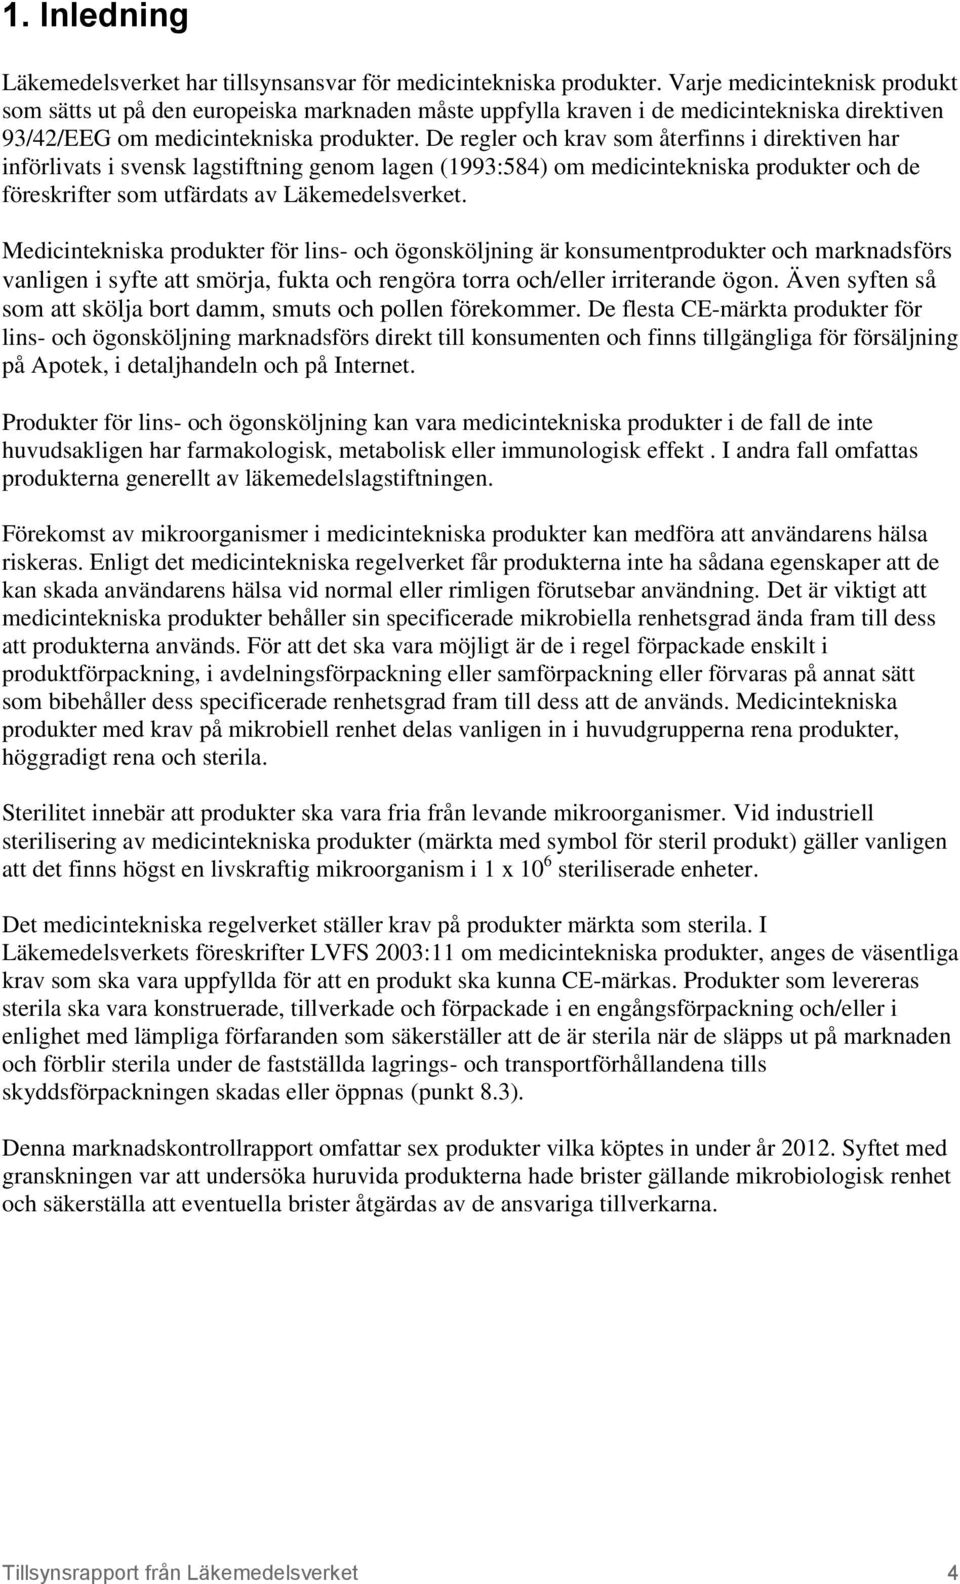 De regler och krav som återfinns i direktiven har införlivats i svensk lagstiftning genom lagen (1993:584) om medicintekniska produkter och de föreskrifter som utfärdats av Läkemedelsverket.